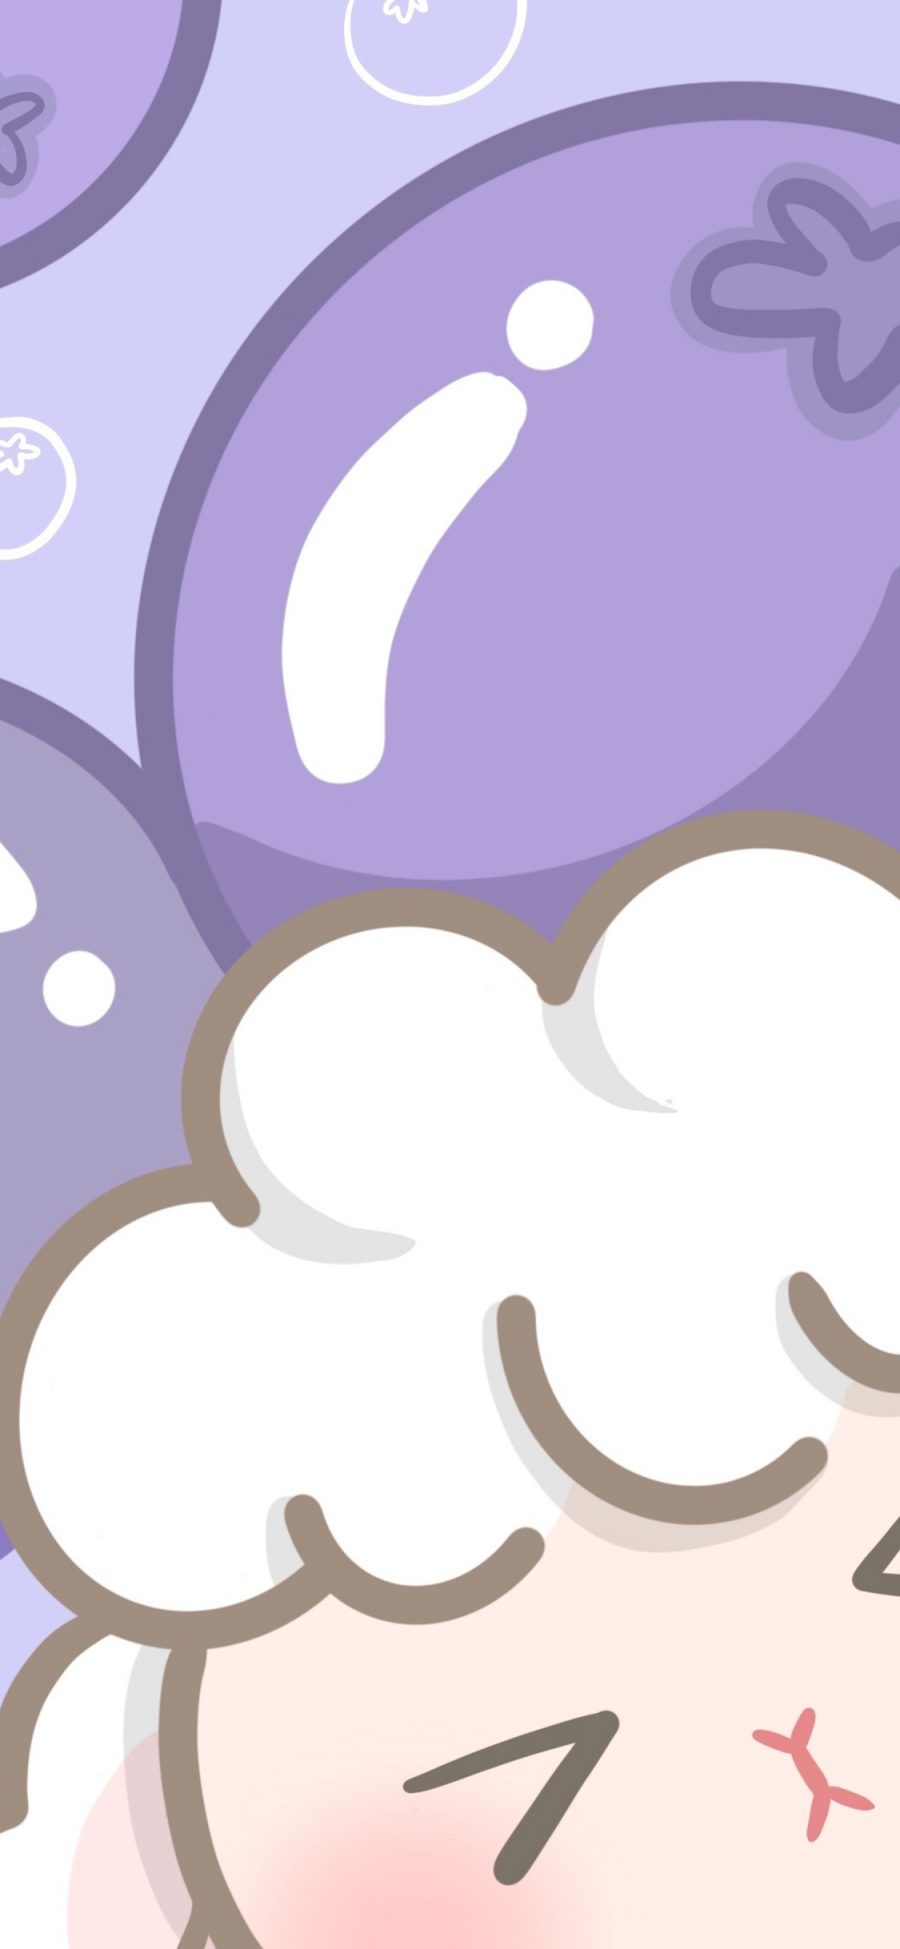 [2436×1125]羊 紫色 蓝莓 可爱 苹果手机动漫壁纸图片